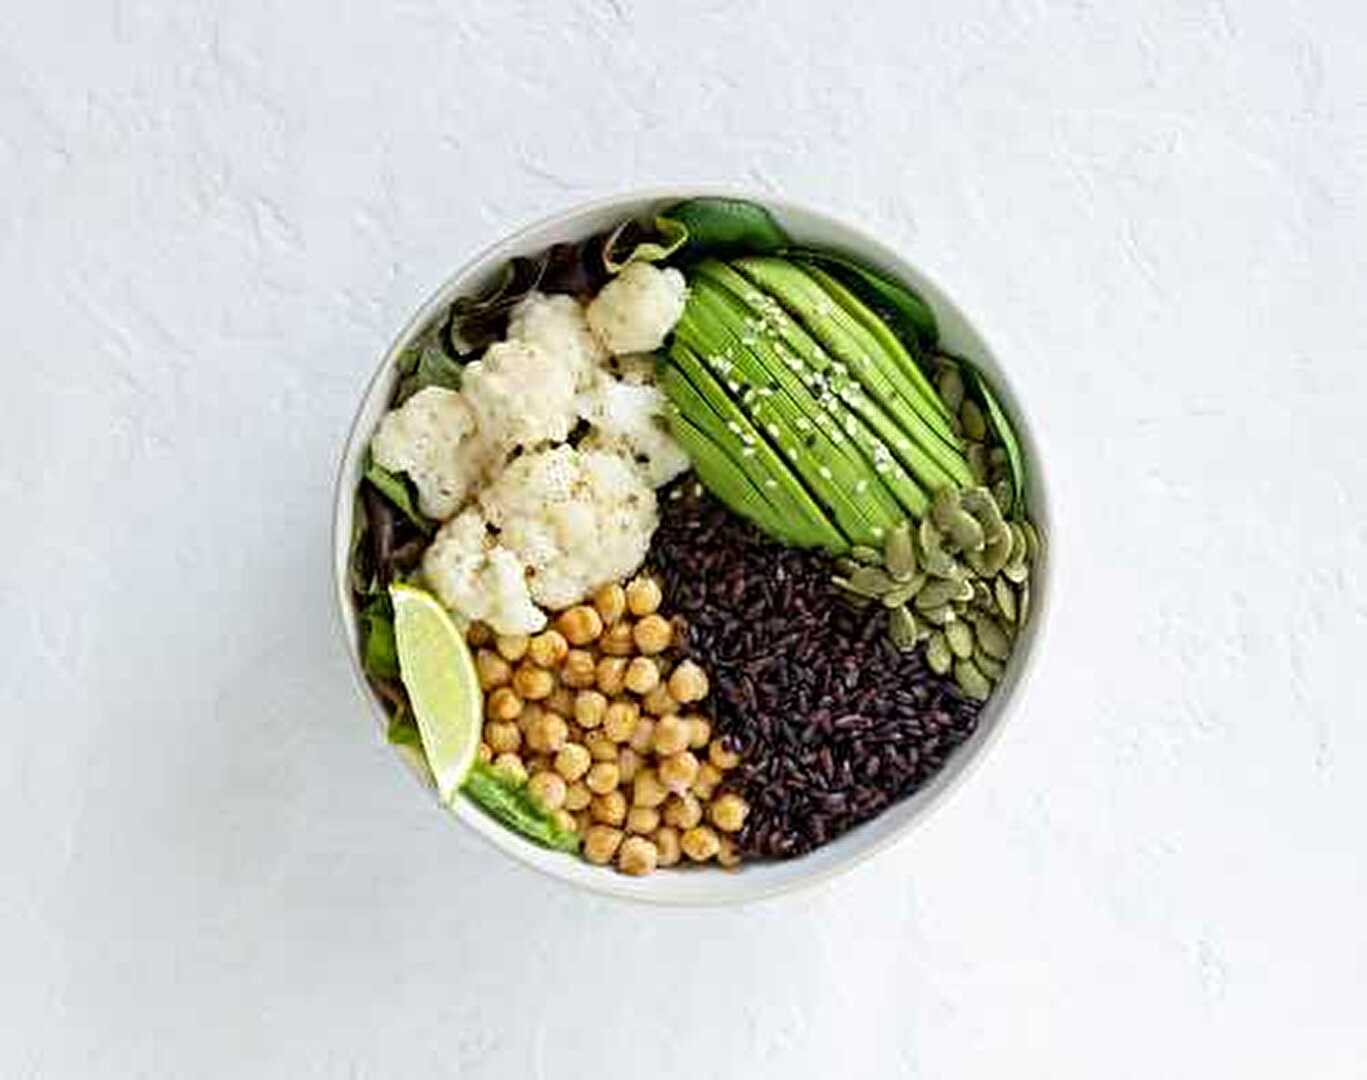 Buddha Bowl au riz noir, avocat, pois chiches, chou, épinards et salade : une recette d'automne par excellence !